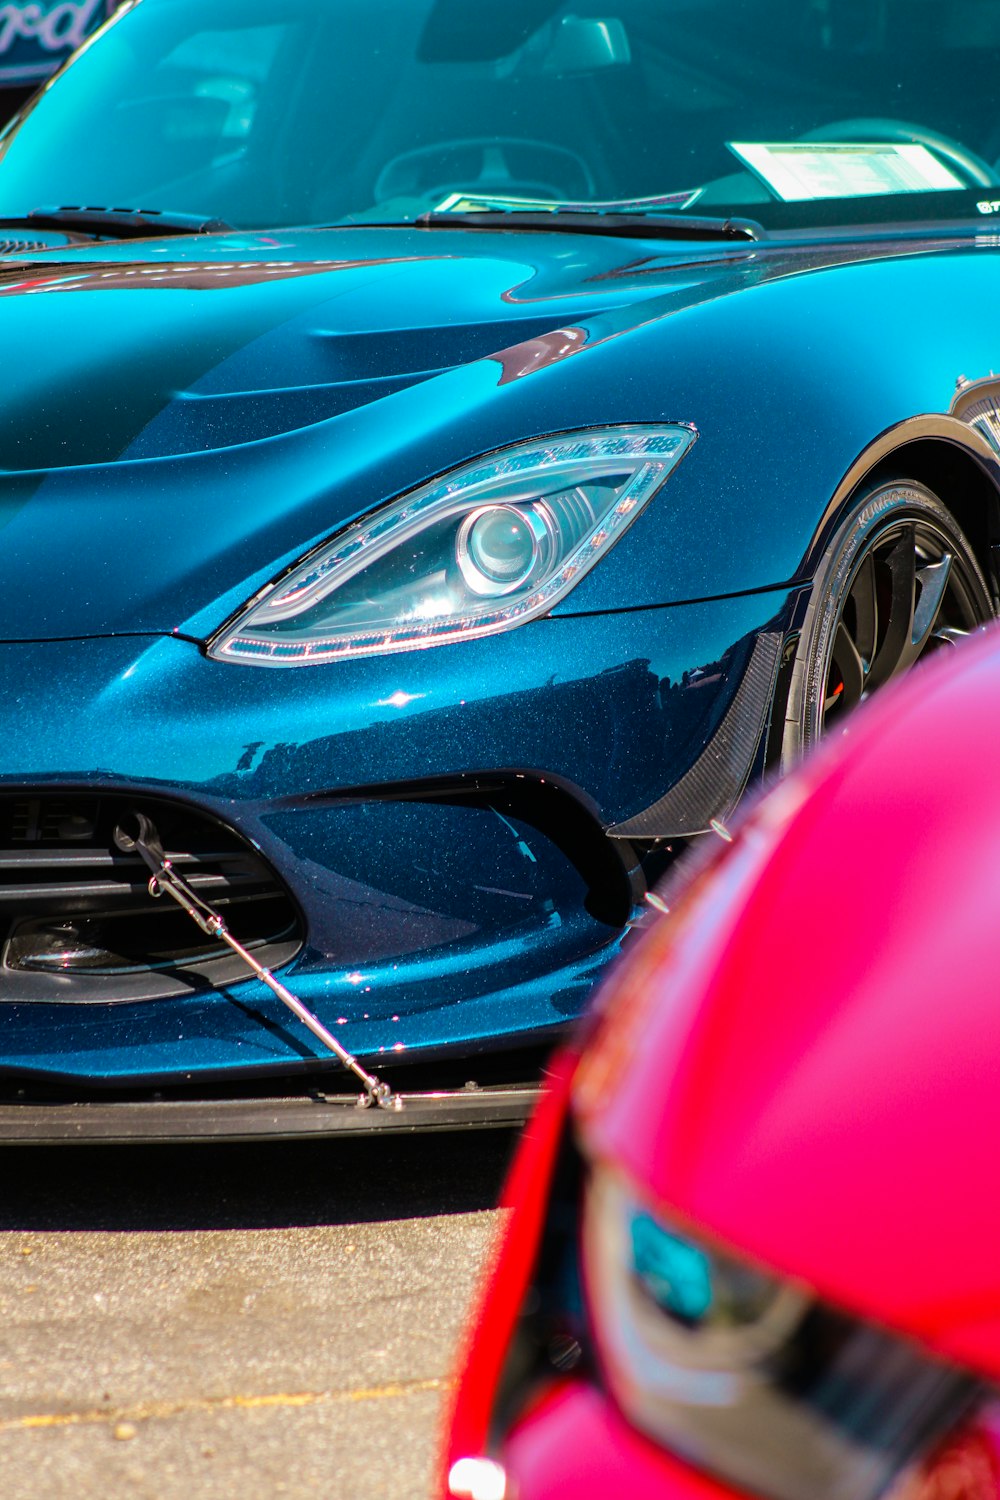 Ein blauer Sportwagen parkt neben einem roten Sportwagen